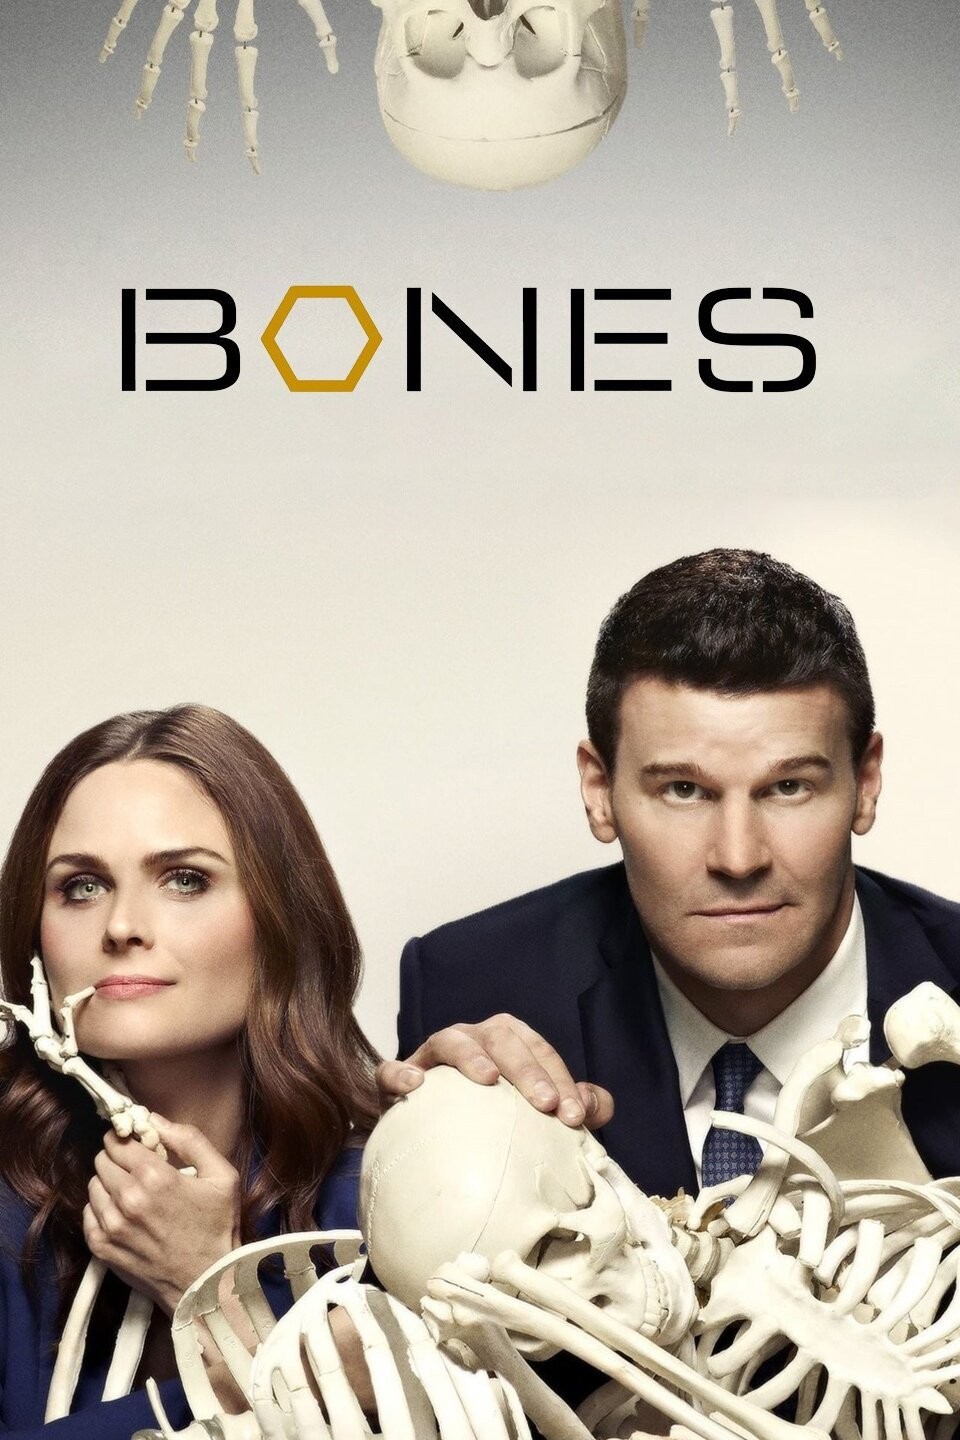 Bones (Série), Sinopse, Trailers e Curiosidades - Cinema10